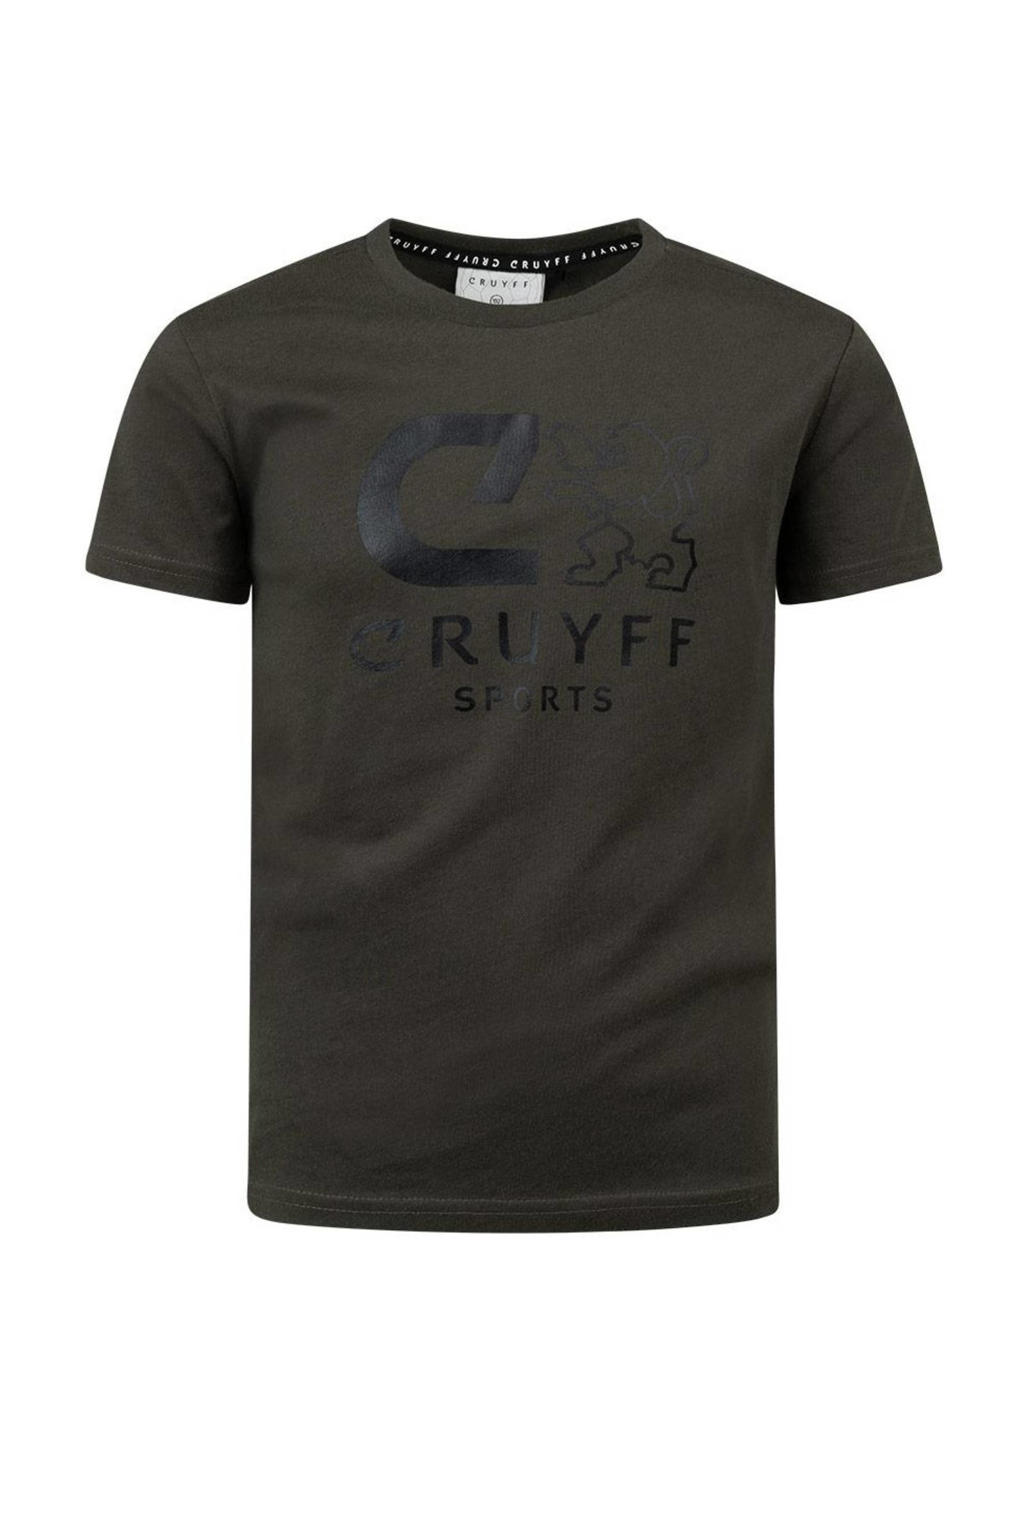 Olijfgroene jongens en meisjes Cruyff T-shirt Booster van katoen met printopdruk, korte mouwen en ronde hals